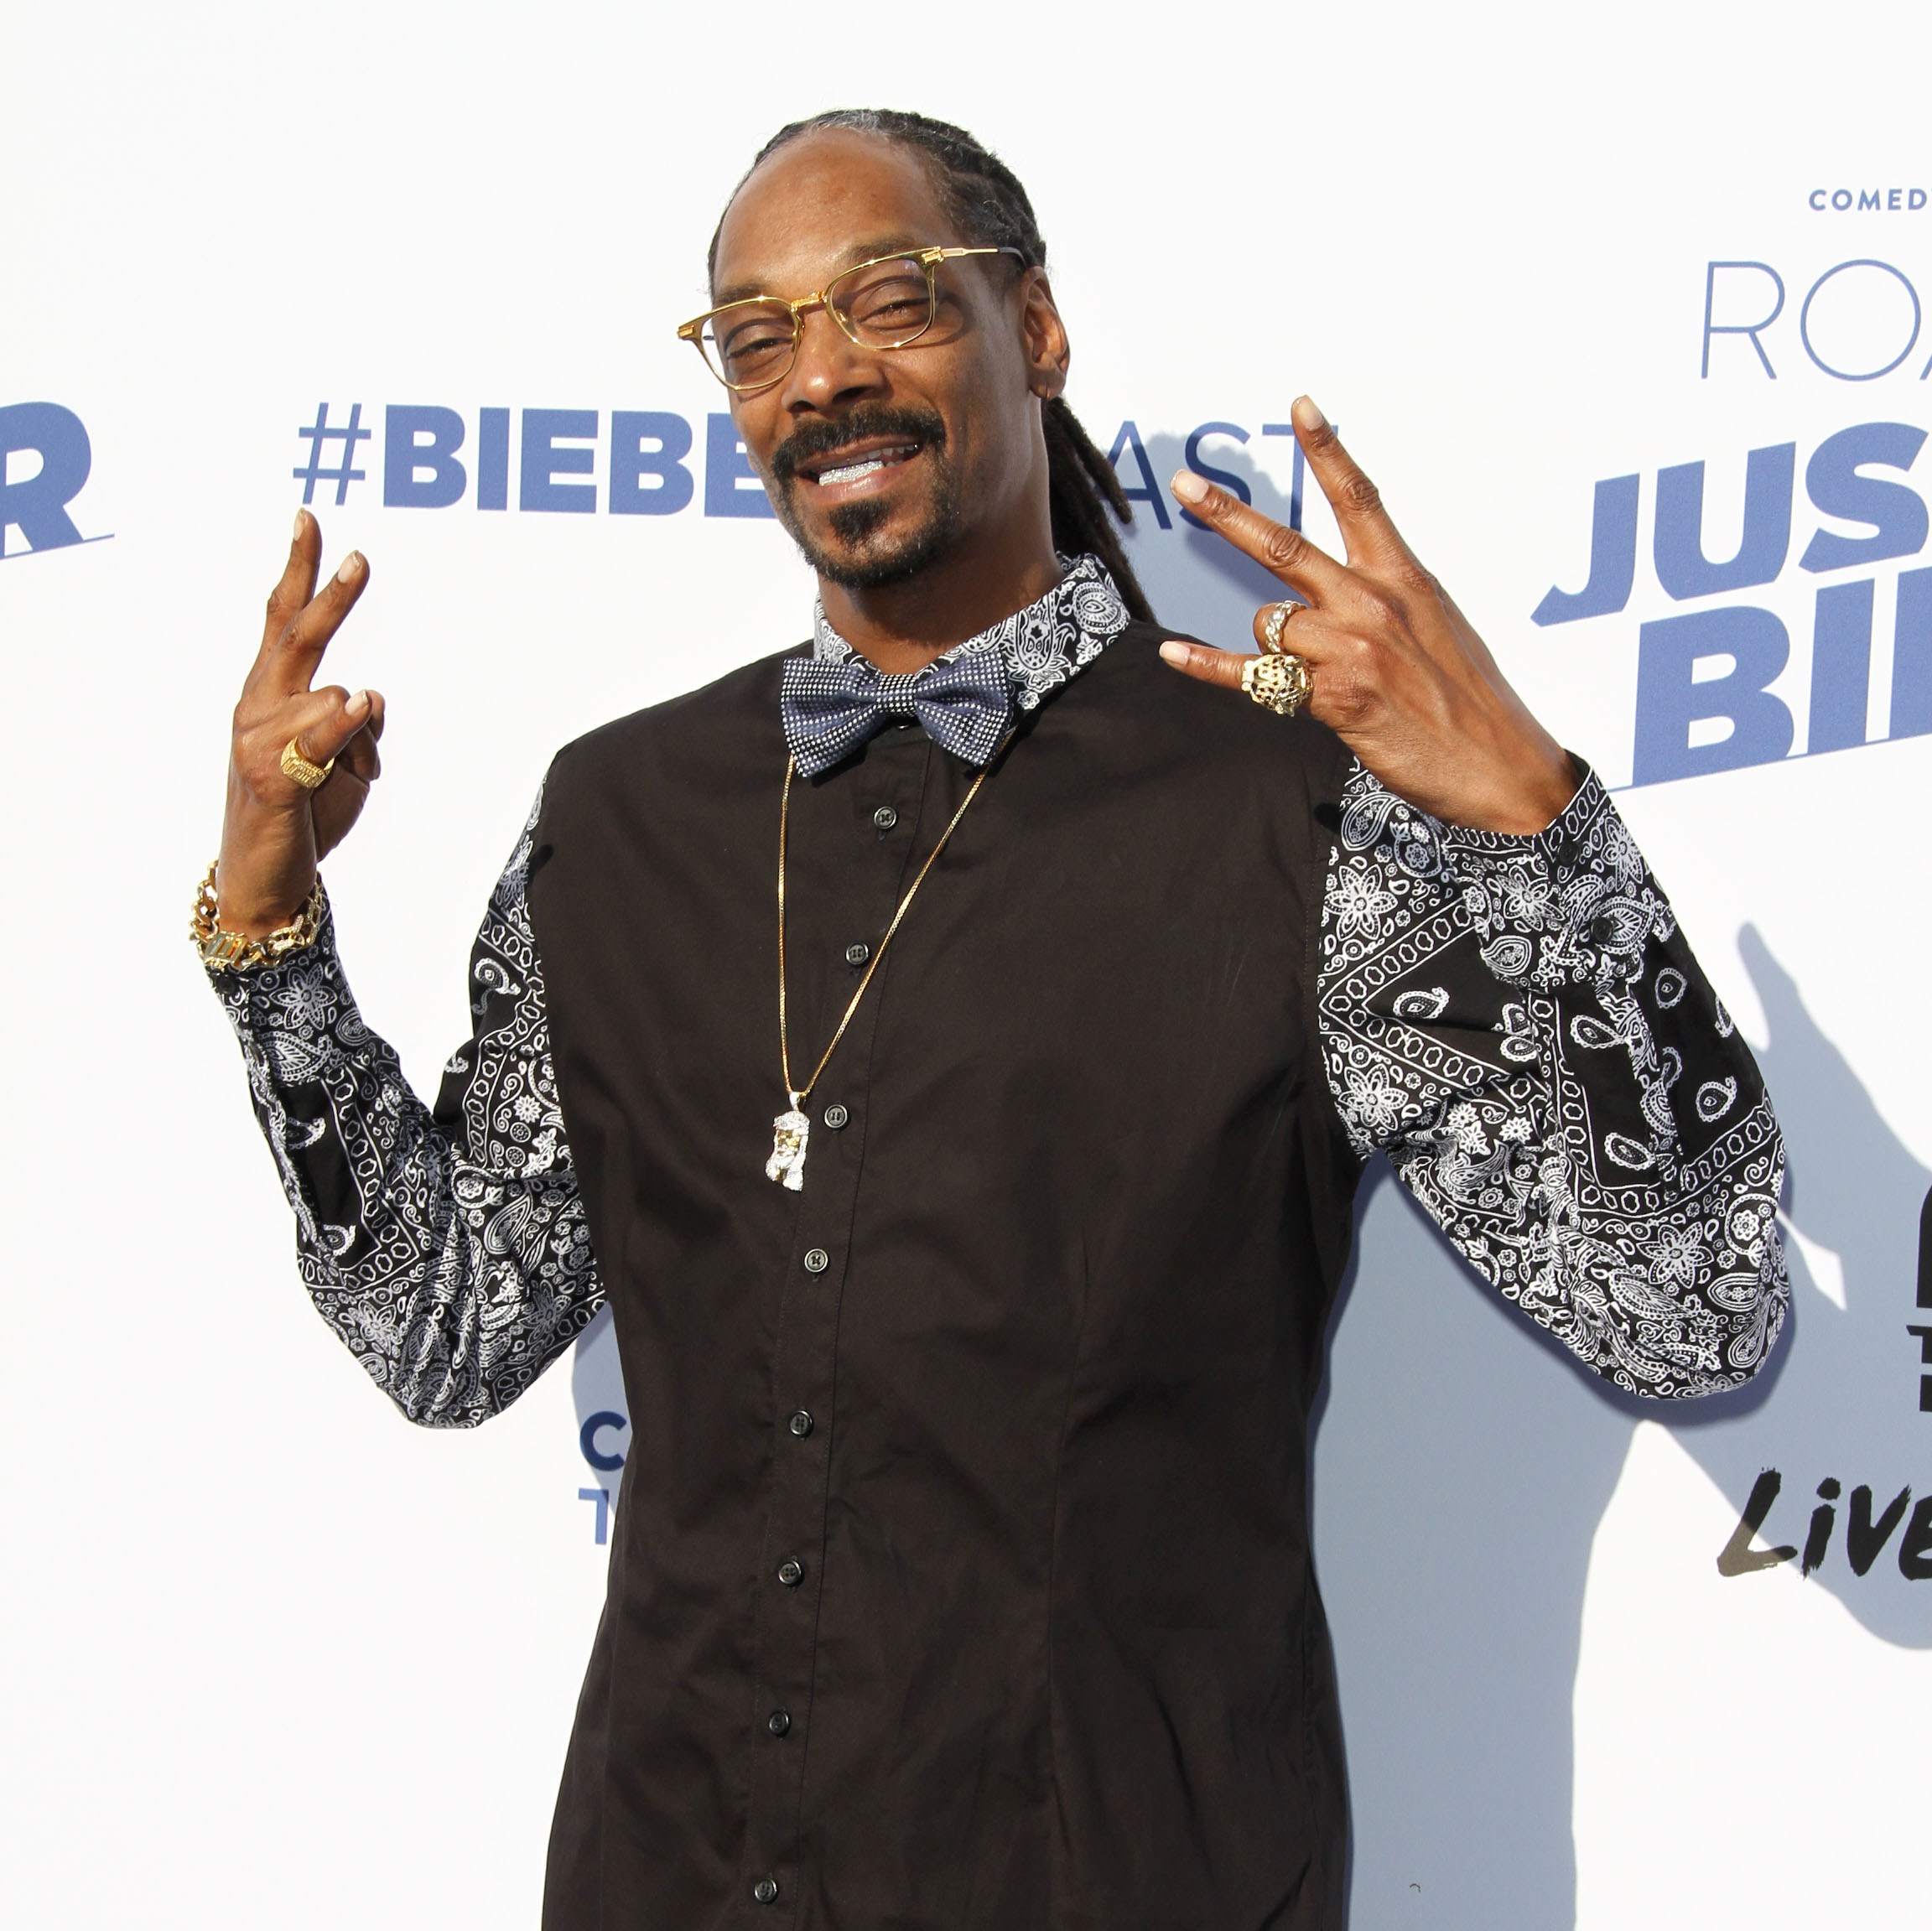 FOTO LOL: Dacă așa arată Snoop Dogg, să vezi cum arată Snoop Man!